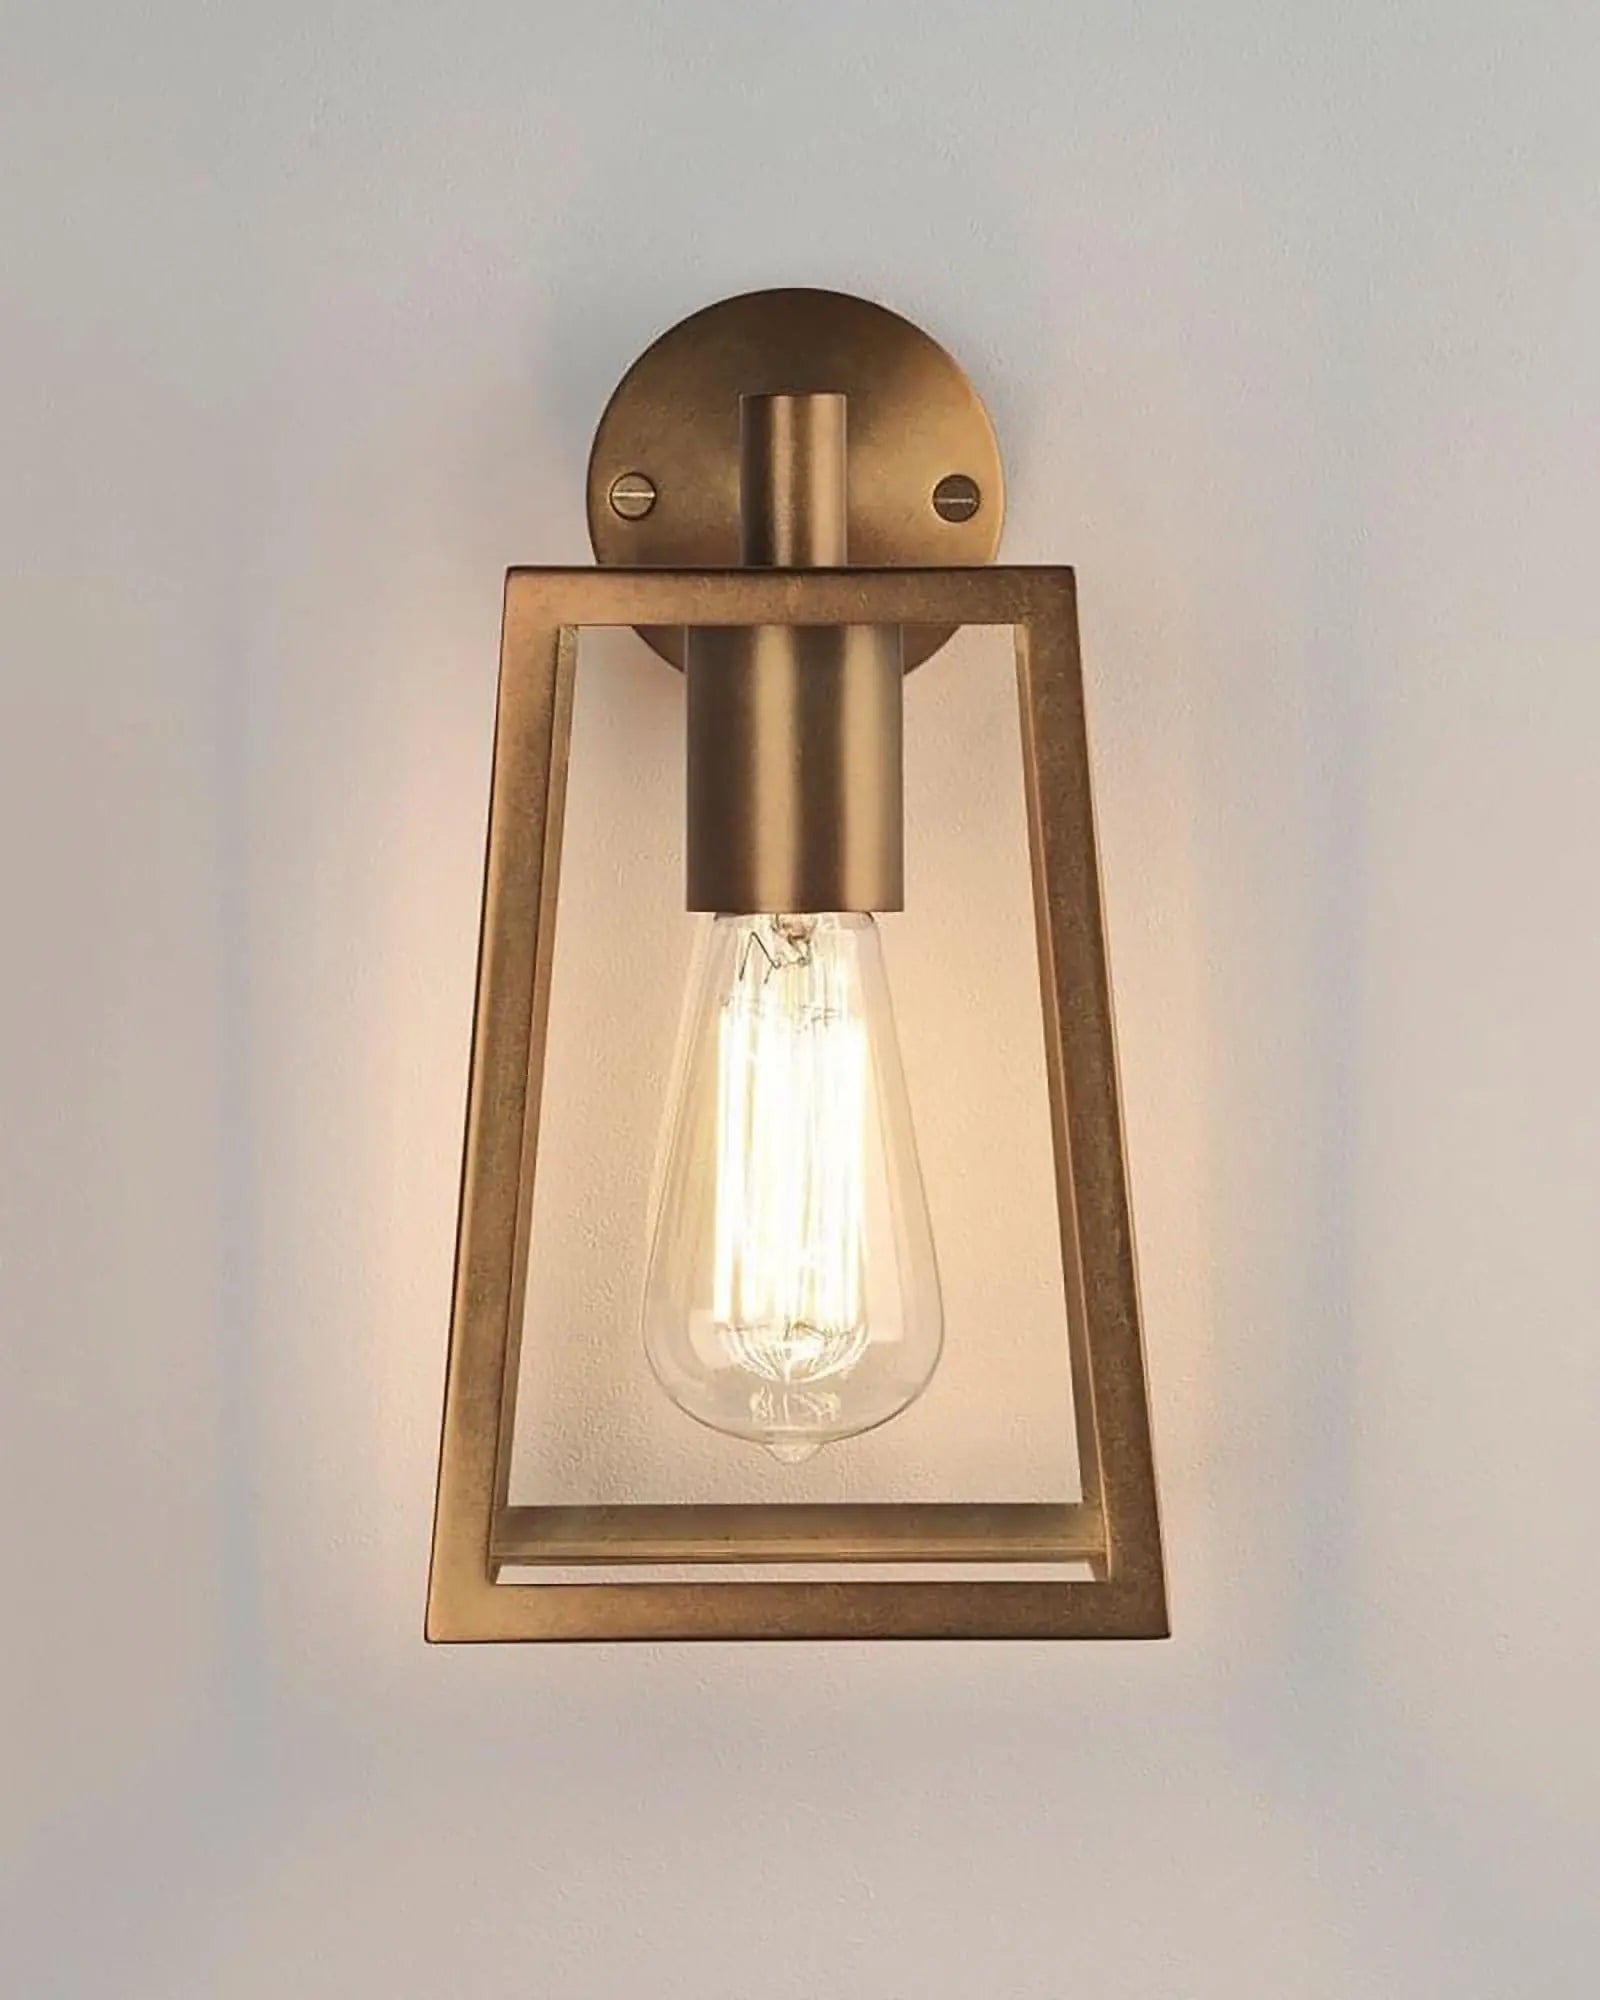 Calvi outdoor lantern style wall light brass